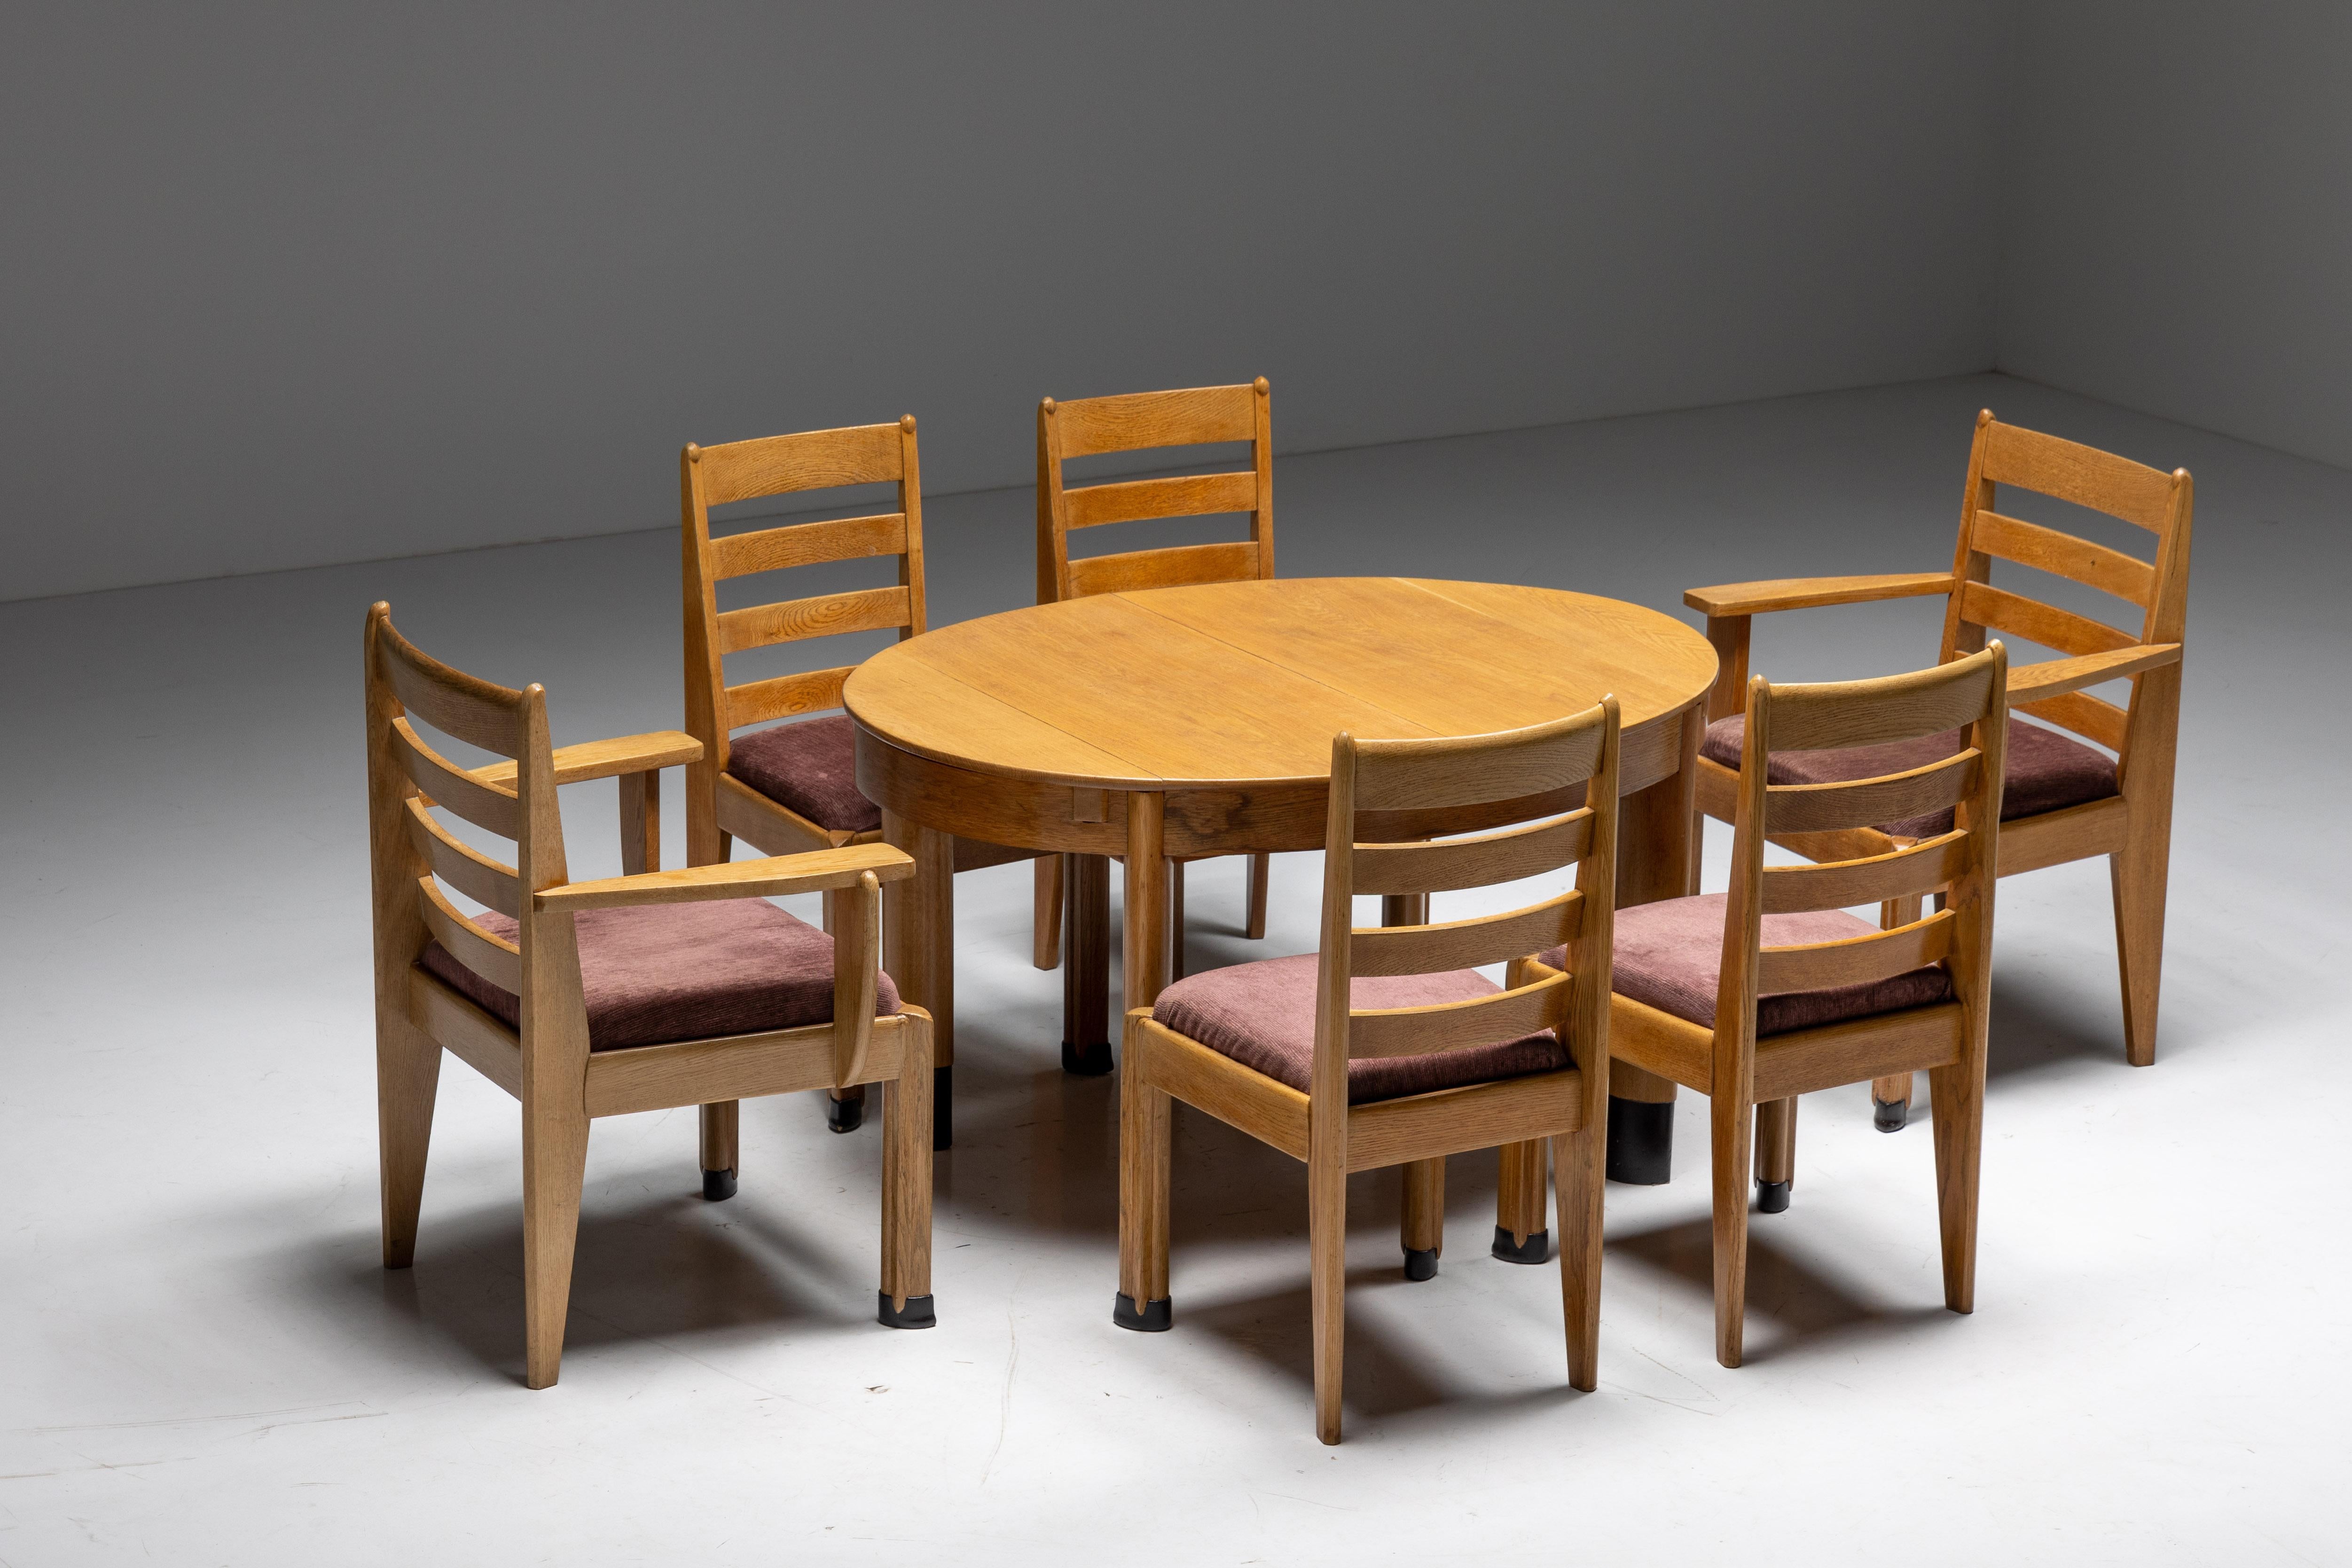 Ensemble de salle à manger en chêne, époque Art déco néerlandaise, école de La Haye, 1928

Table de salle à manger ovale en chêne, sur pieds ovales juxtaposés, néerlandais, années 1920
Chaises de salle à manger rationalistes, ensemble de quatre,